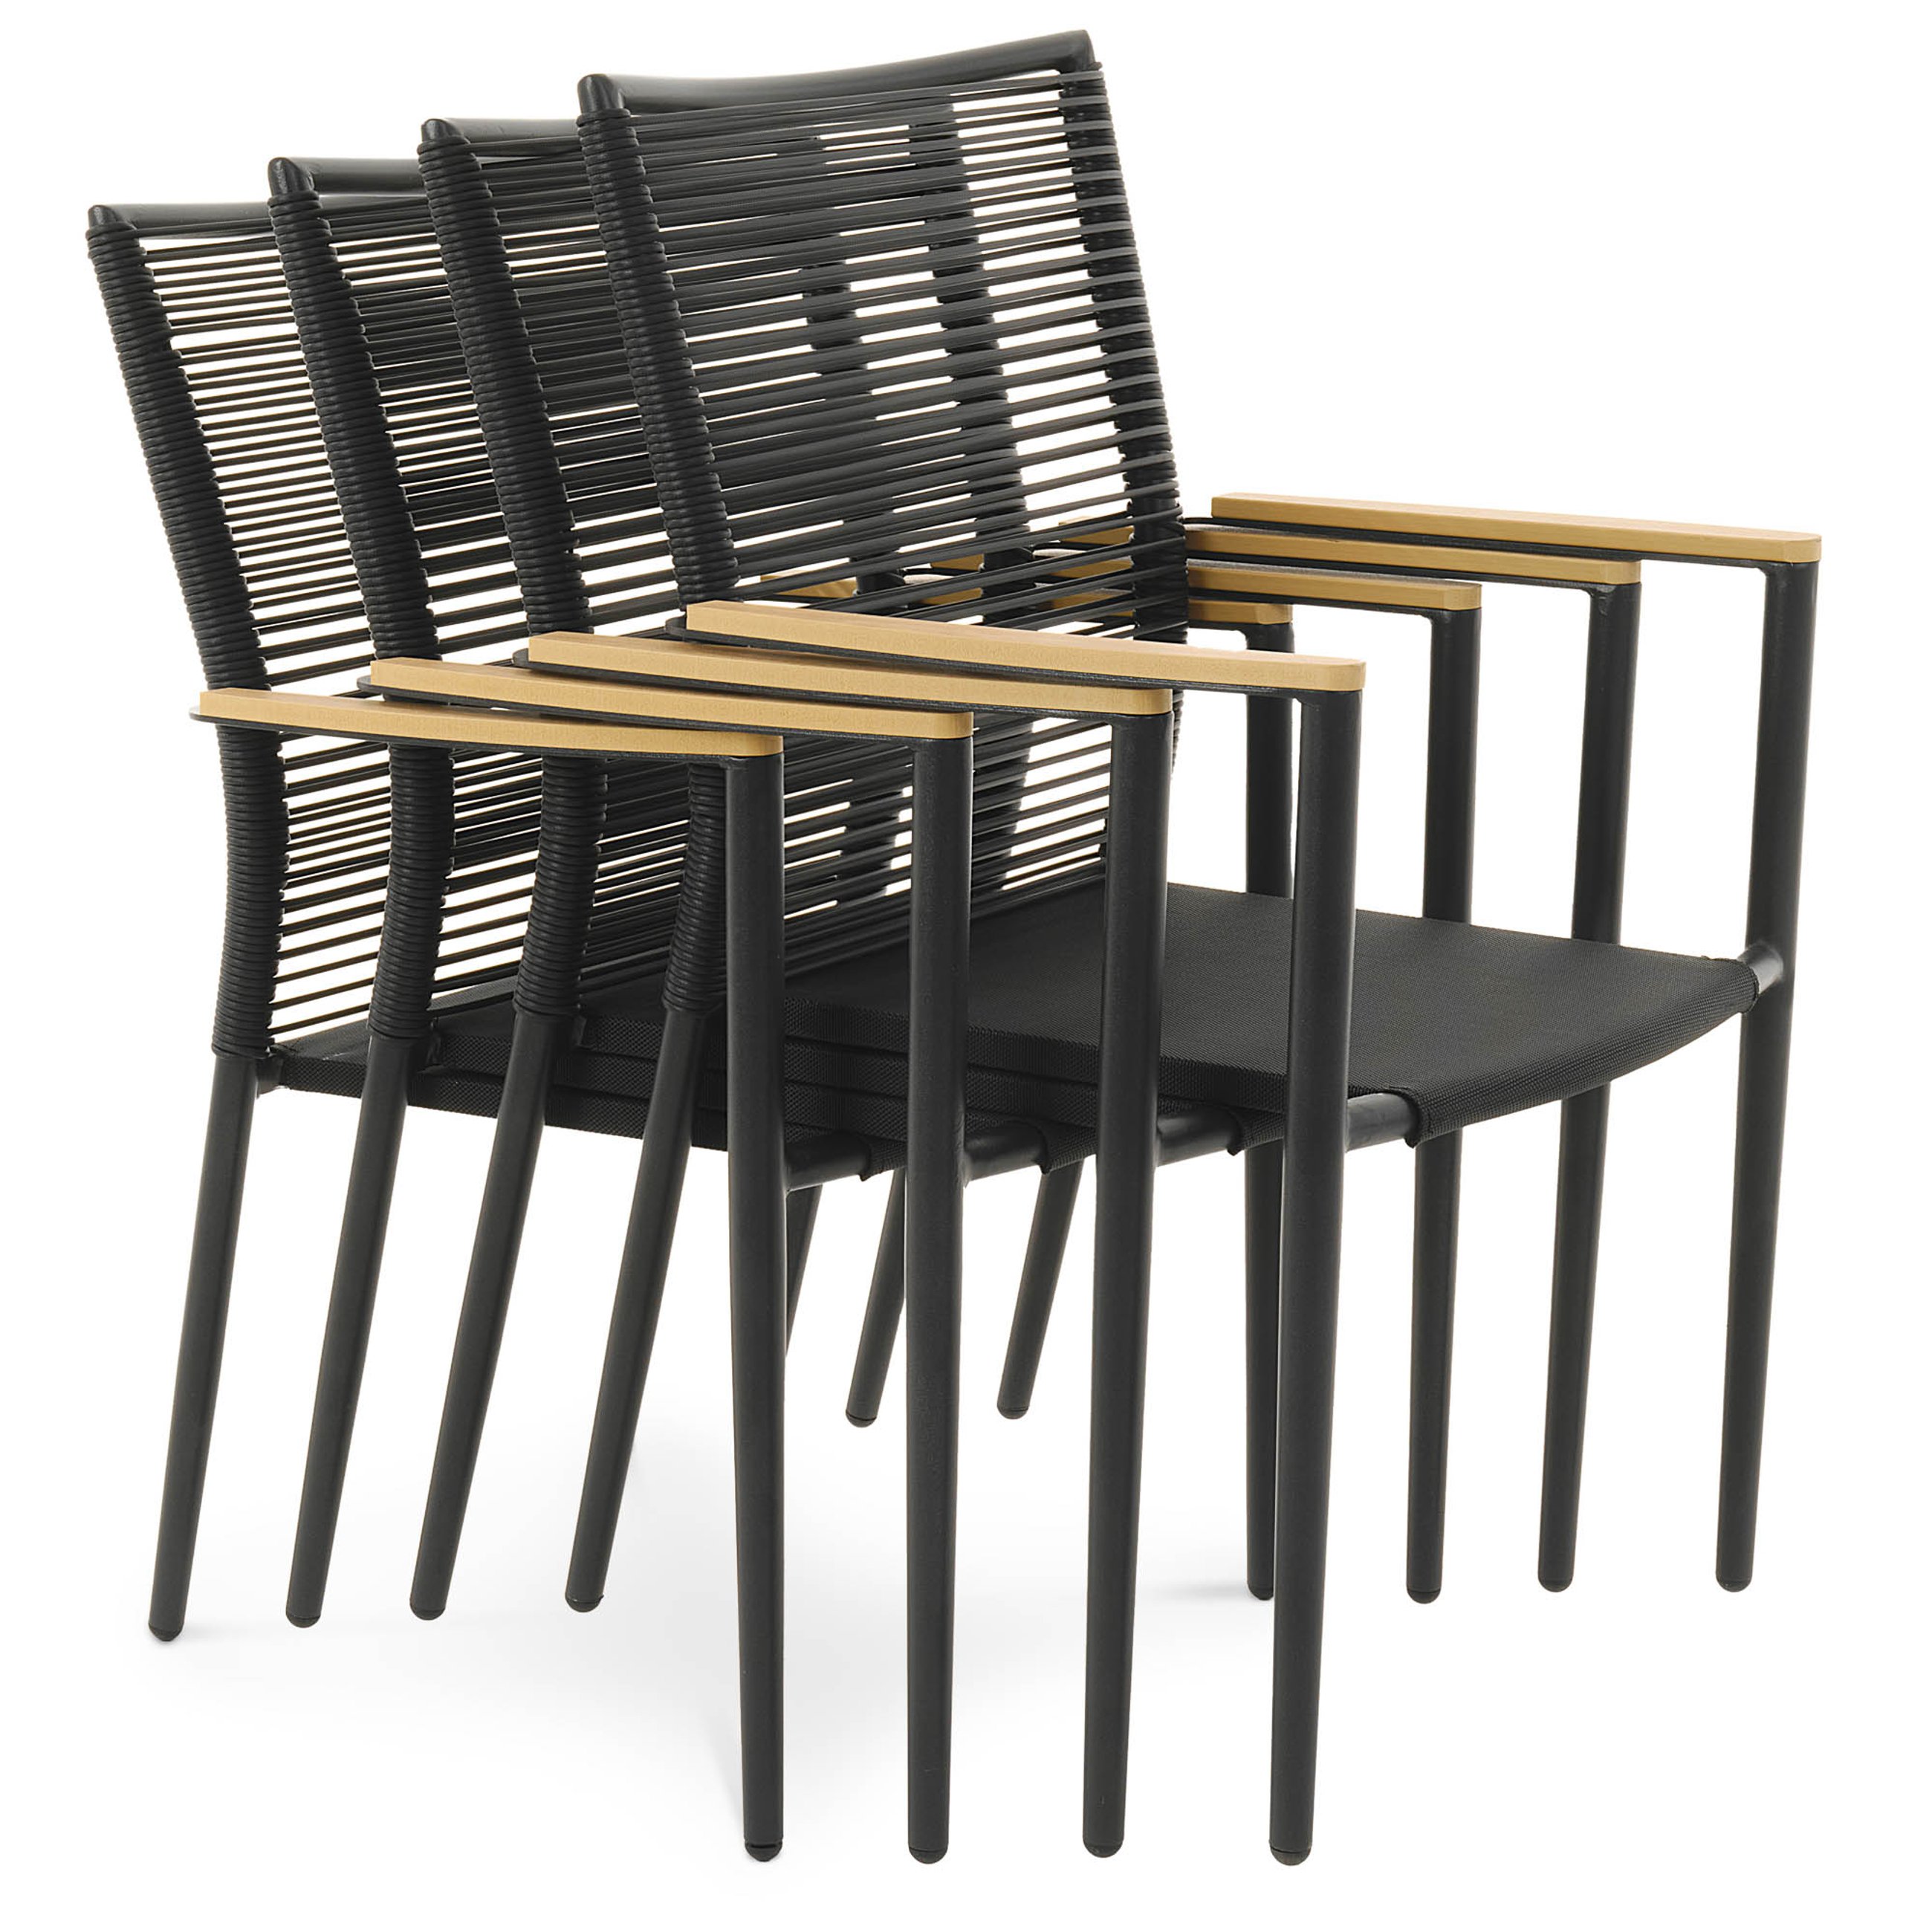 Możliwość sztaplowania krzeseł Asti z beżowymi podłokietnikami w ilości 4 sztuki